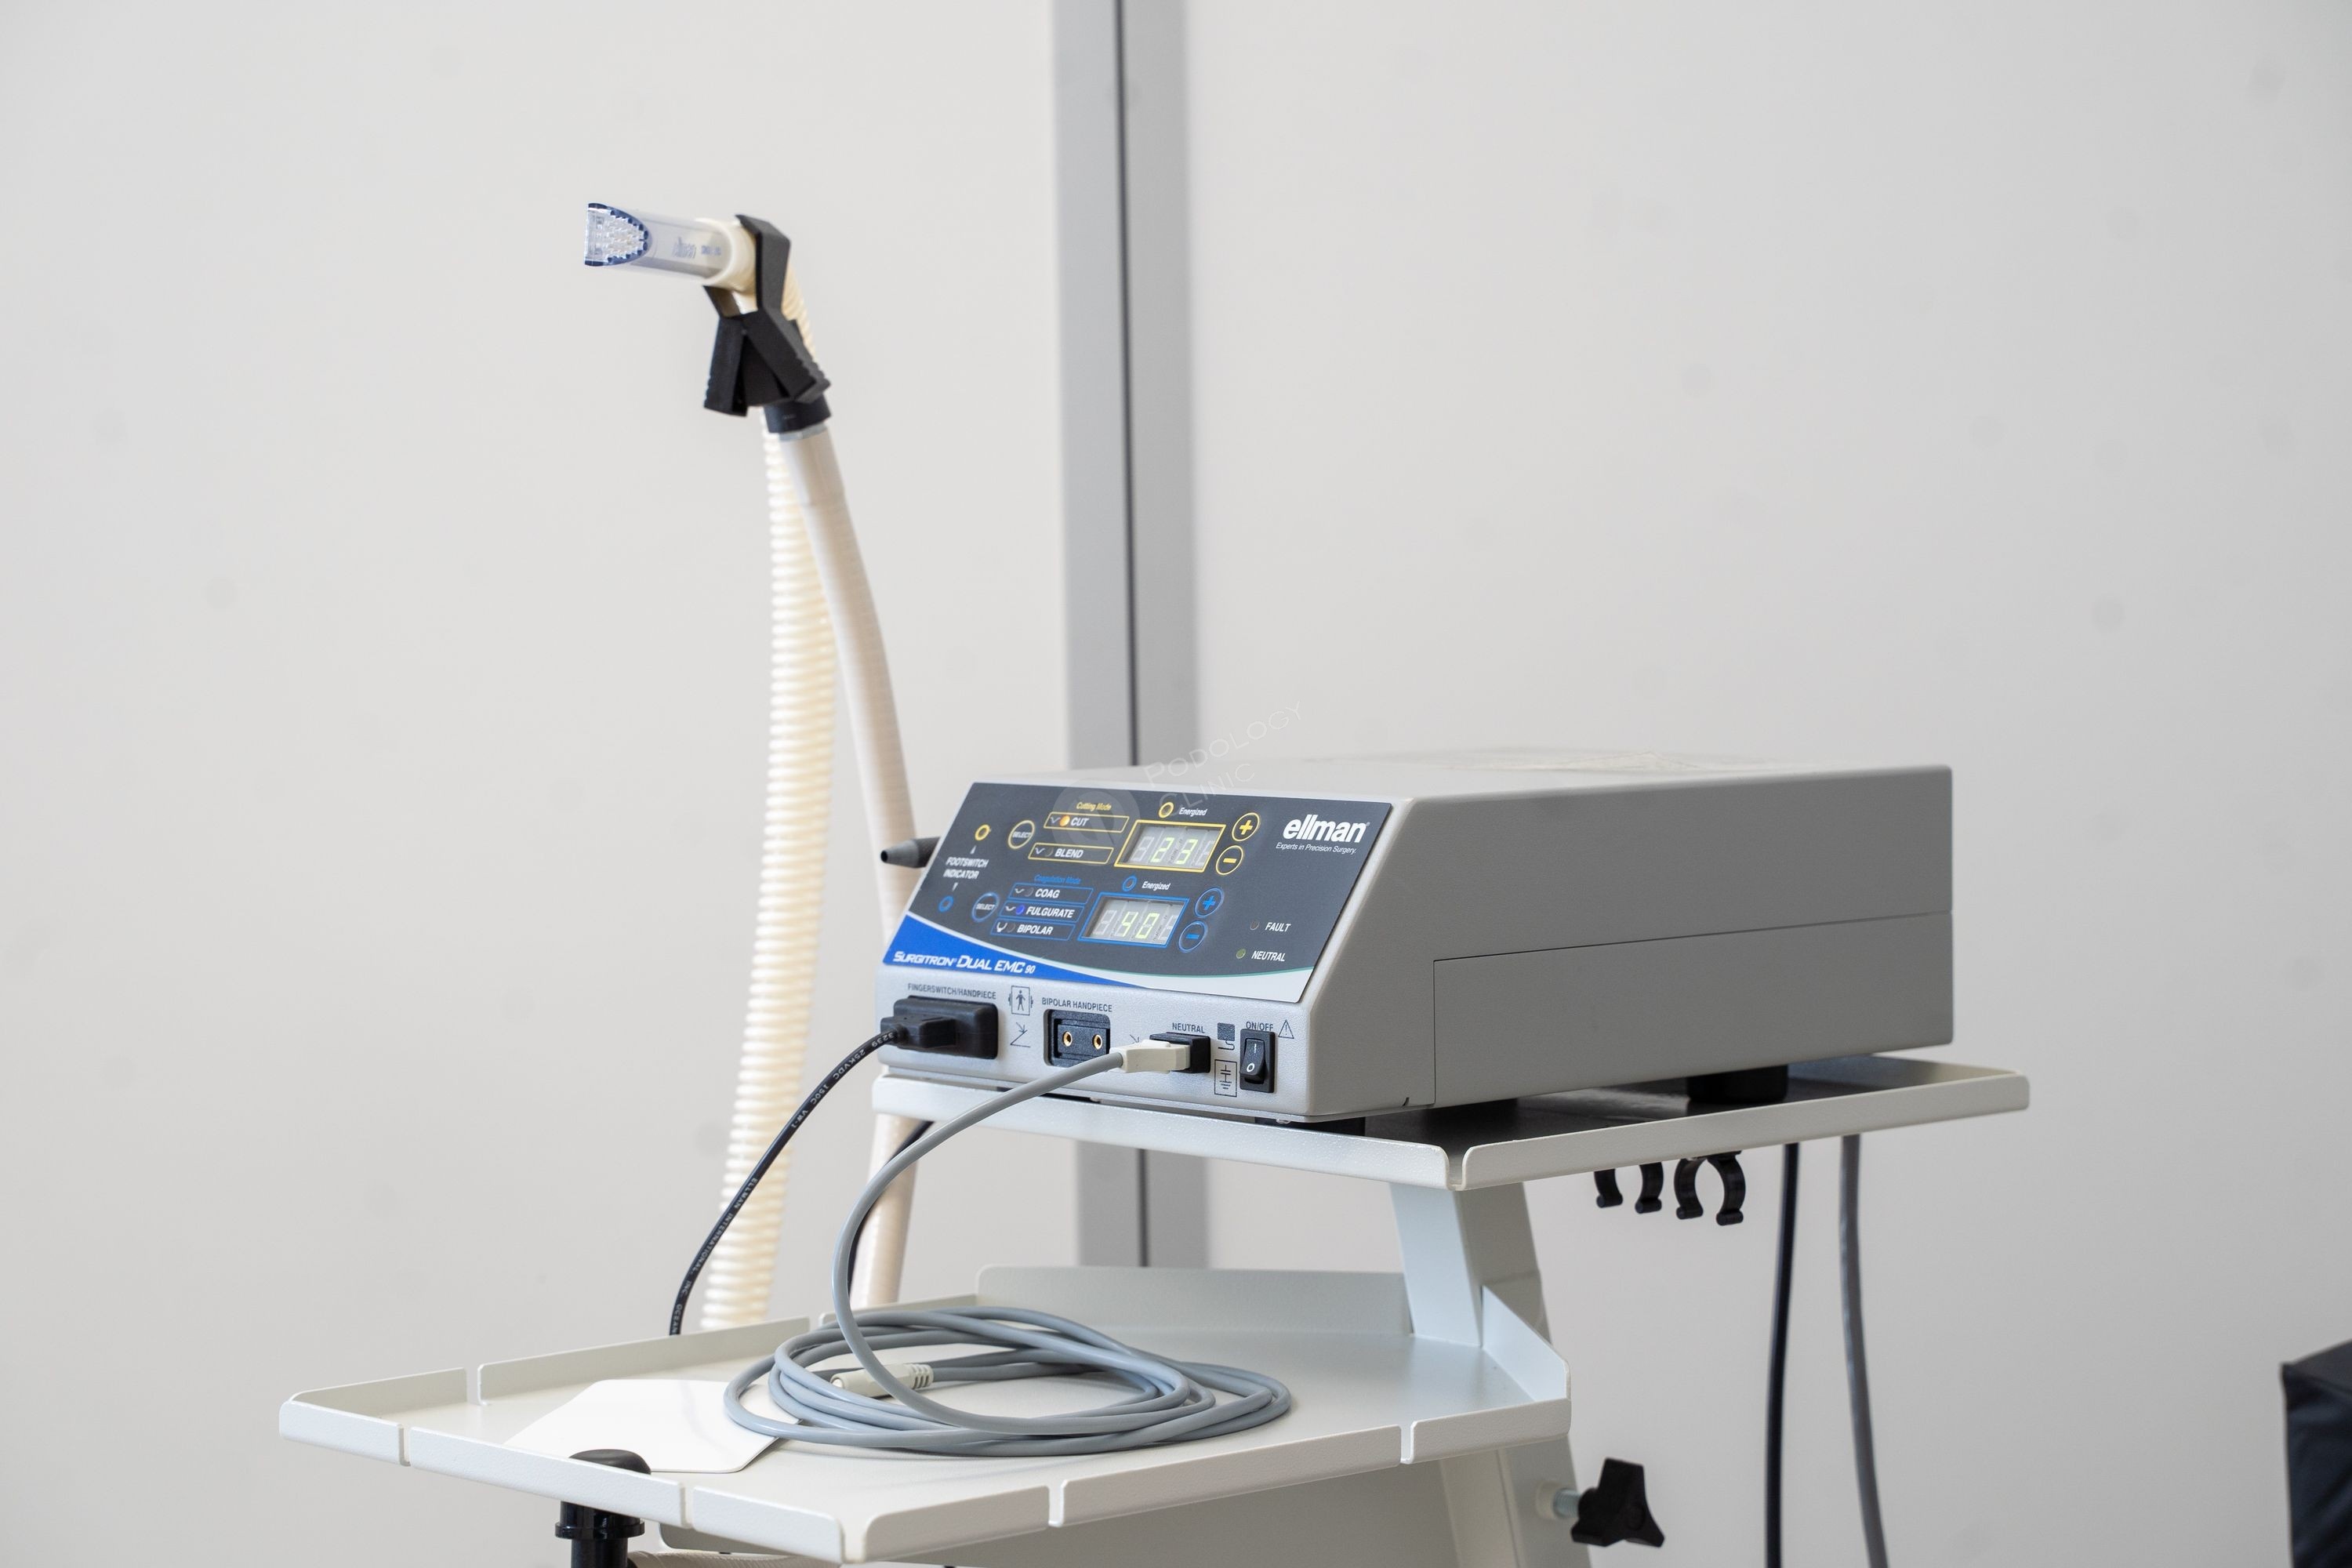 «Сургитрон» – оригинальный портативный медицинский аппарат для радиоволновой хирургии, выпускаемый компанией Ellman (США). Его называют также радионожом, ведь это современная и высокоэффективная альтернатива классического скальпеля. Основное предназначени